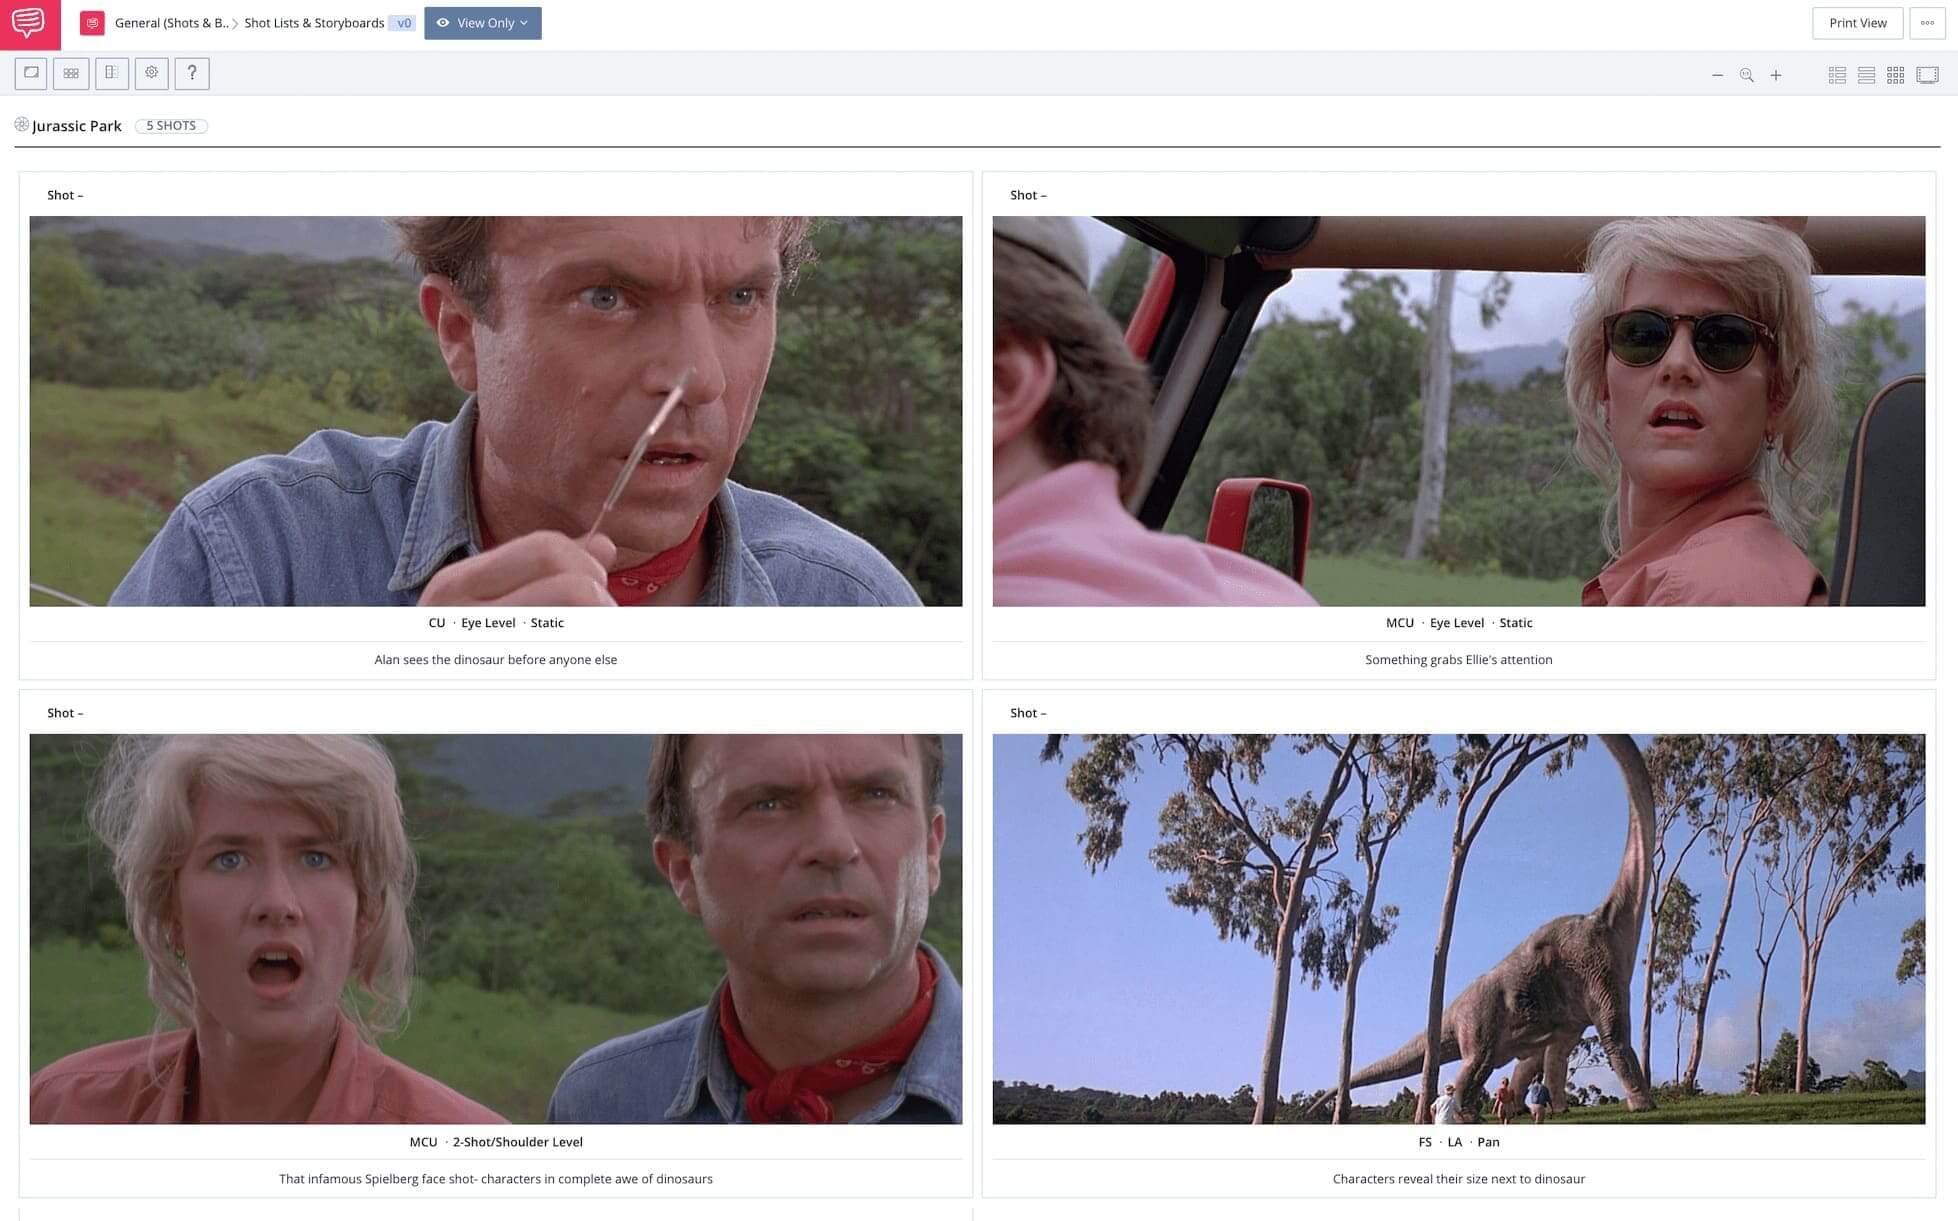 Kuleshov Effect - Spielberg Best Movies - Jurassic Park - StudioBinder Online Shot List Software